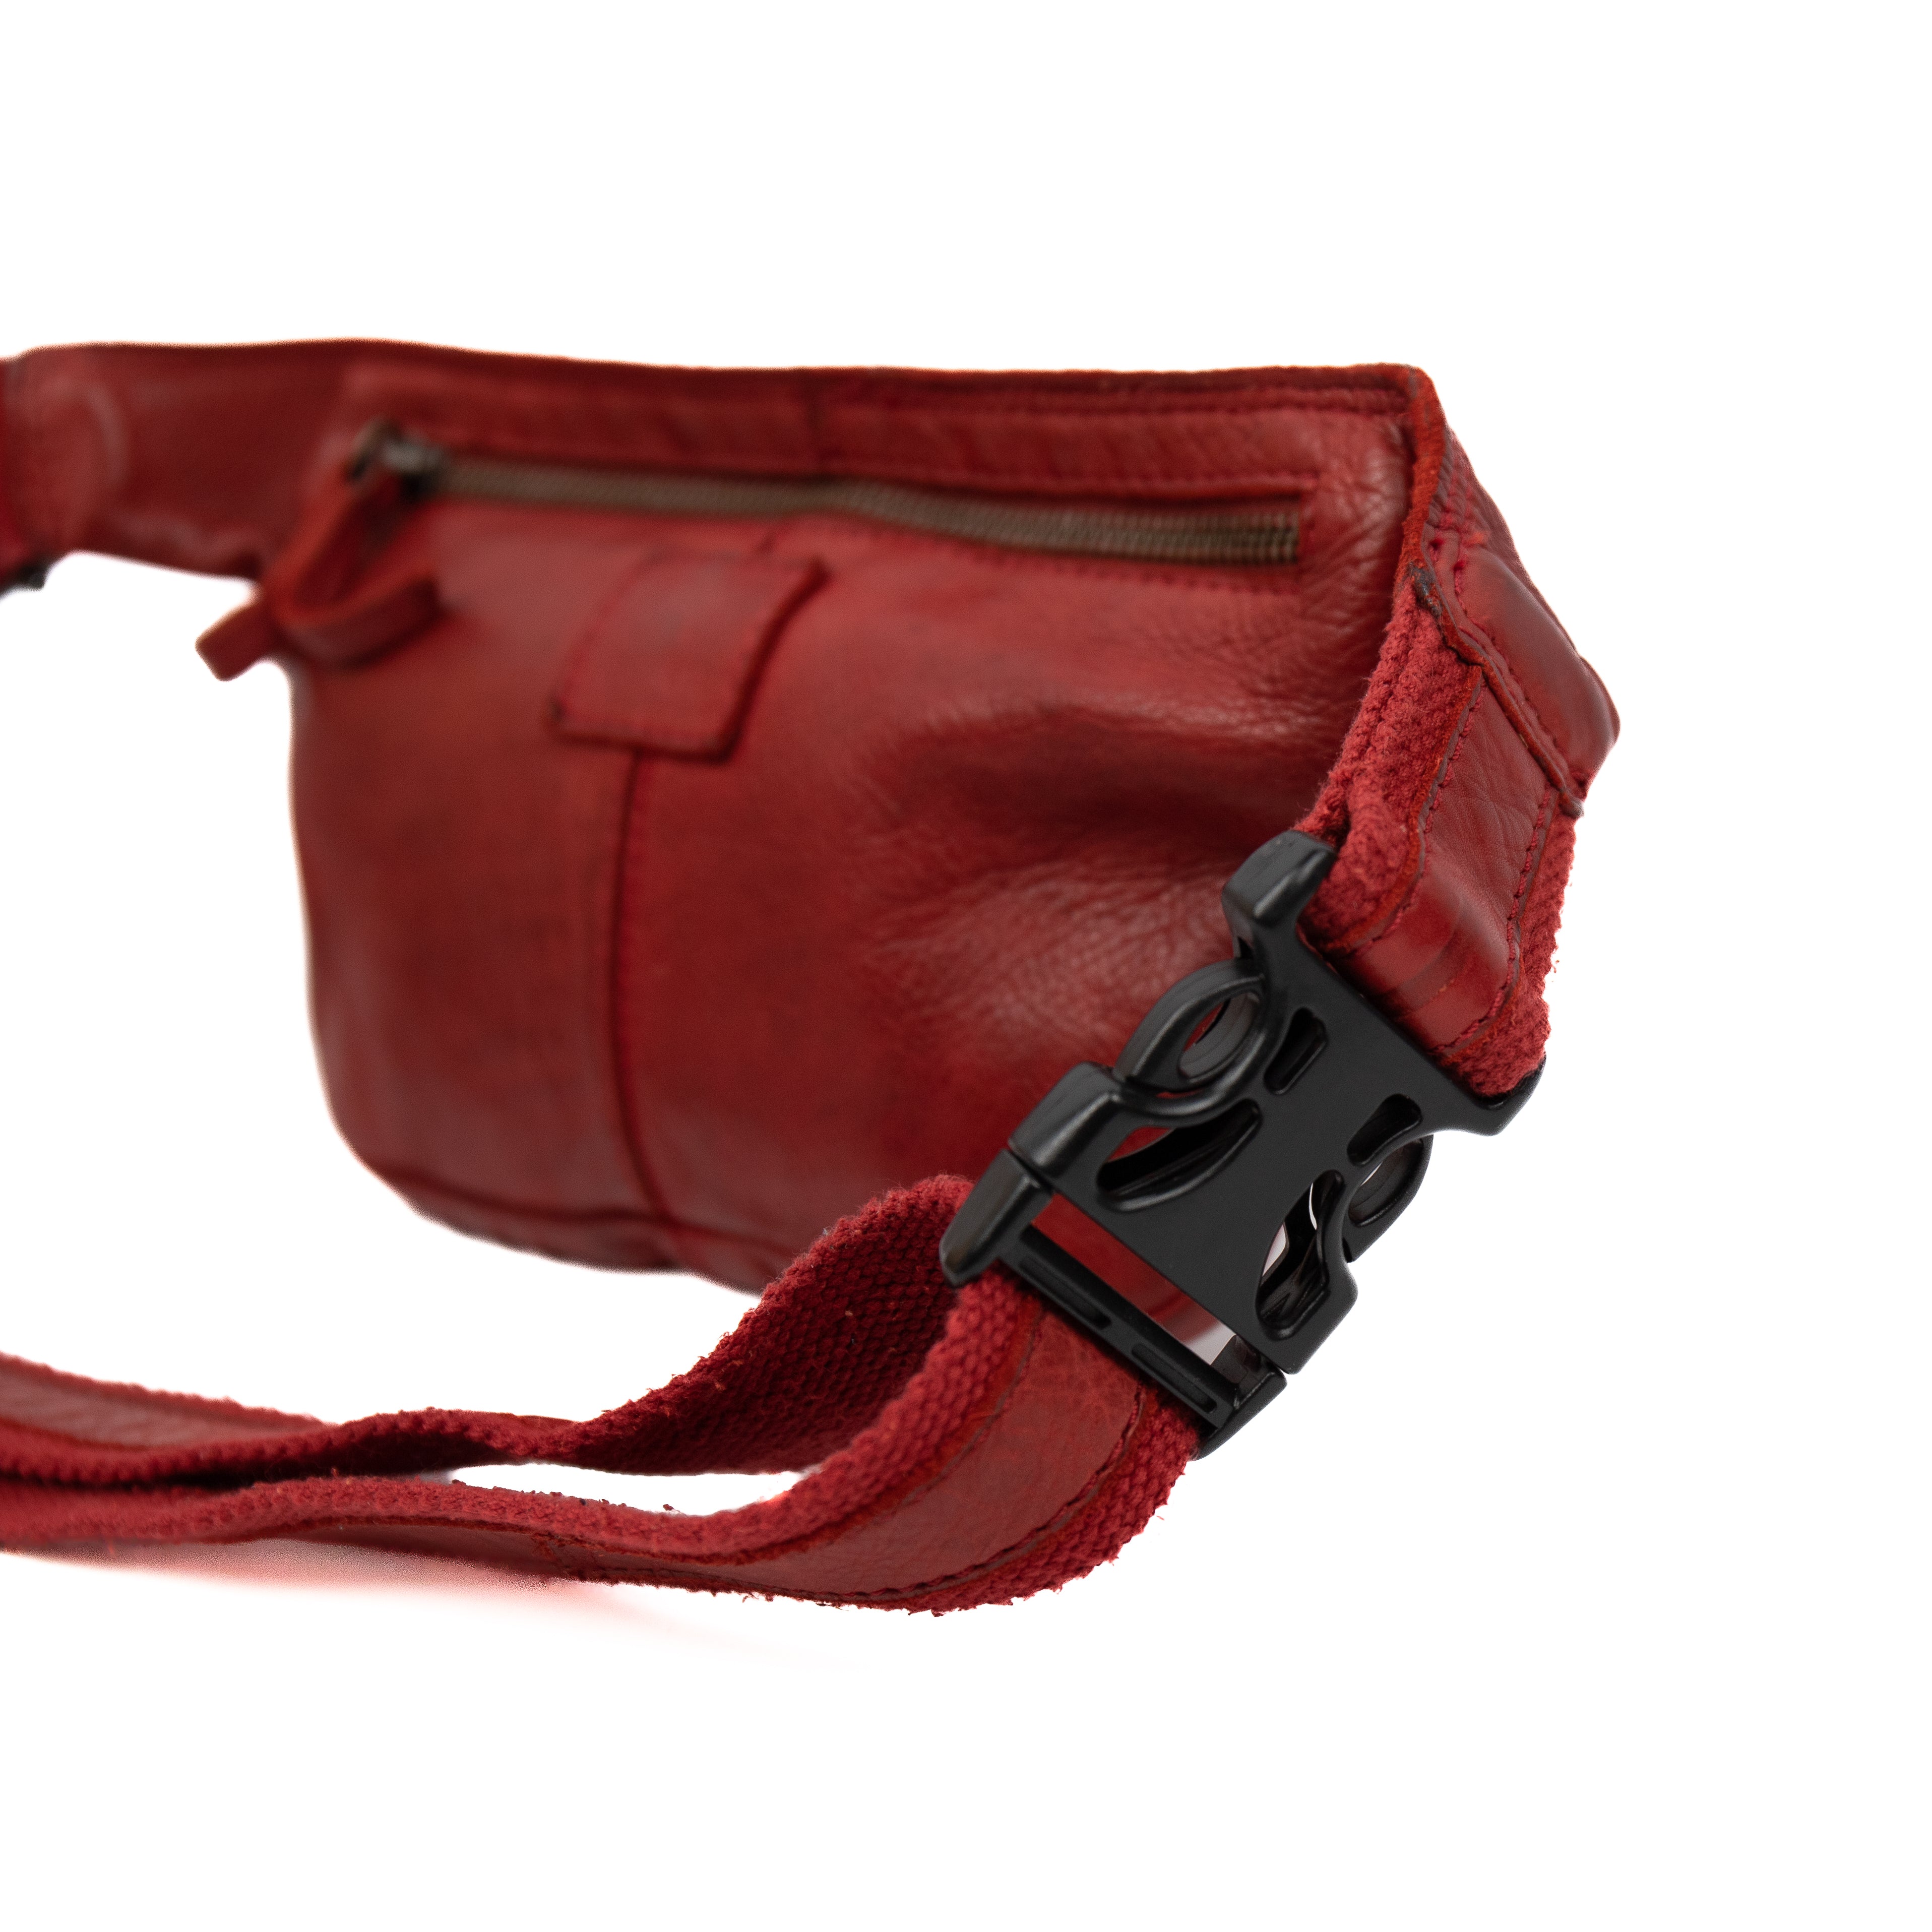 Belt bag 'Emmi' red - CL 36063